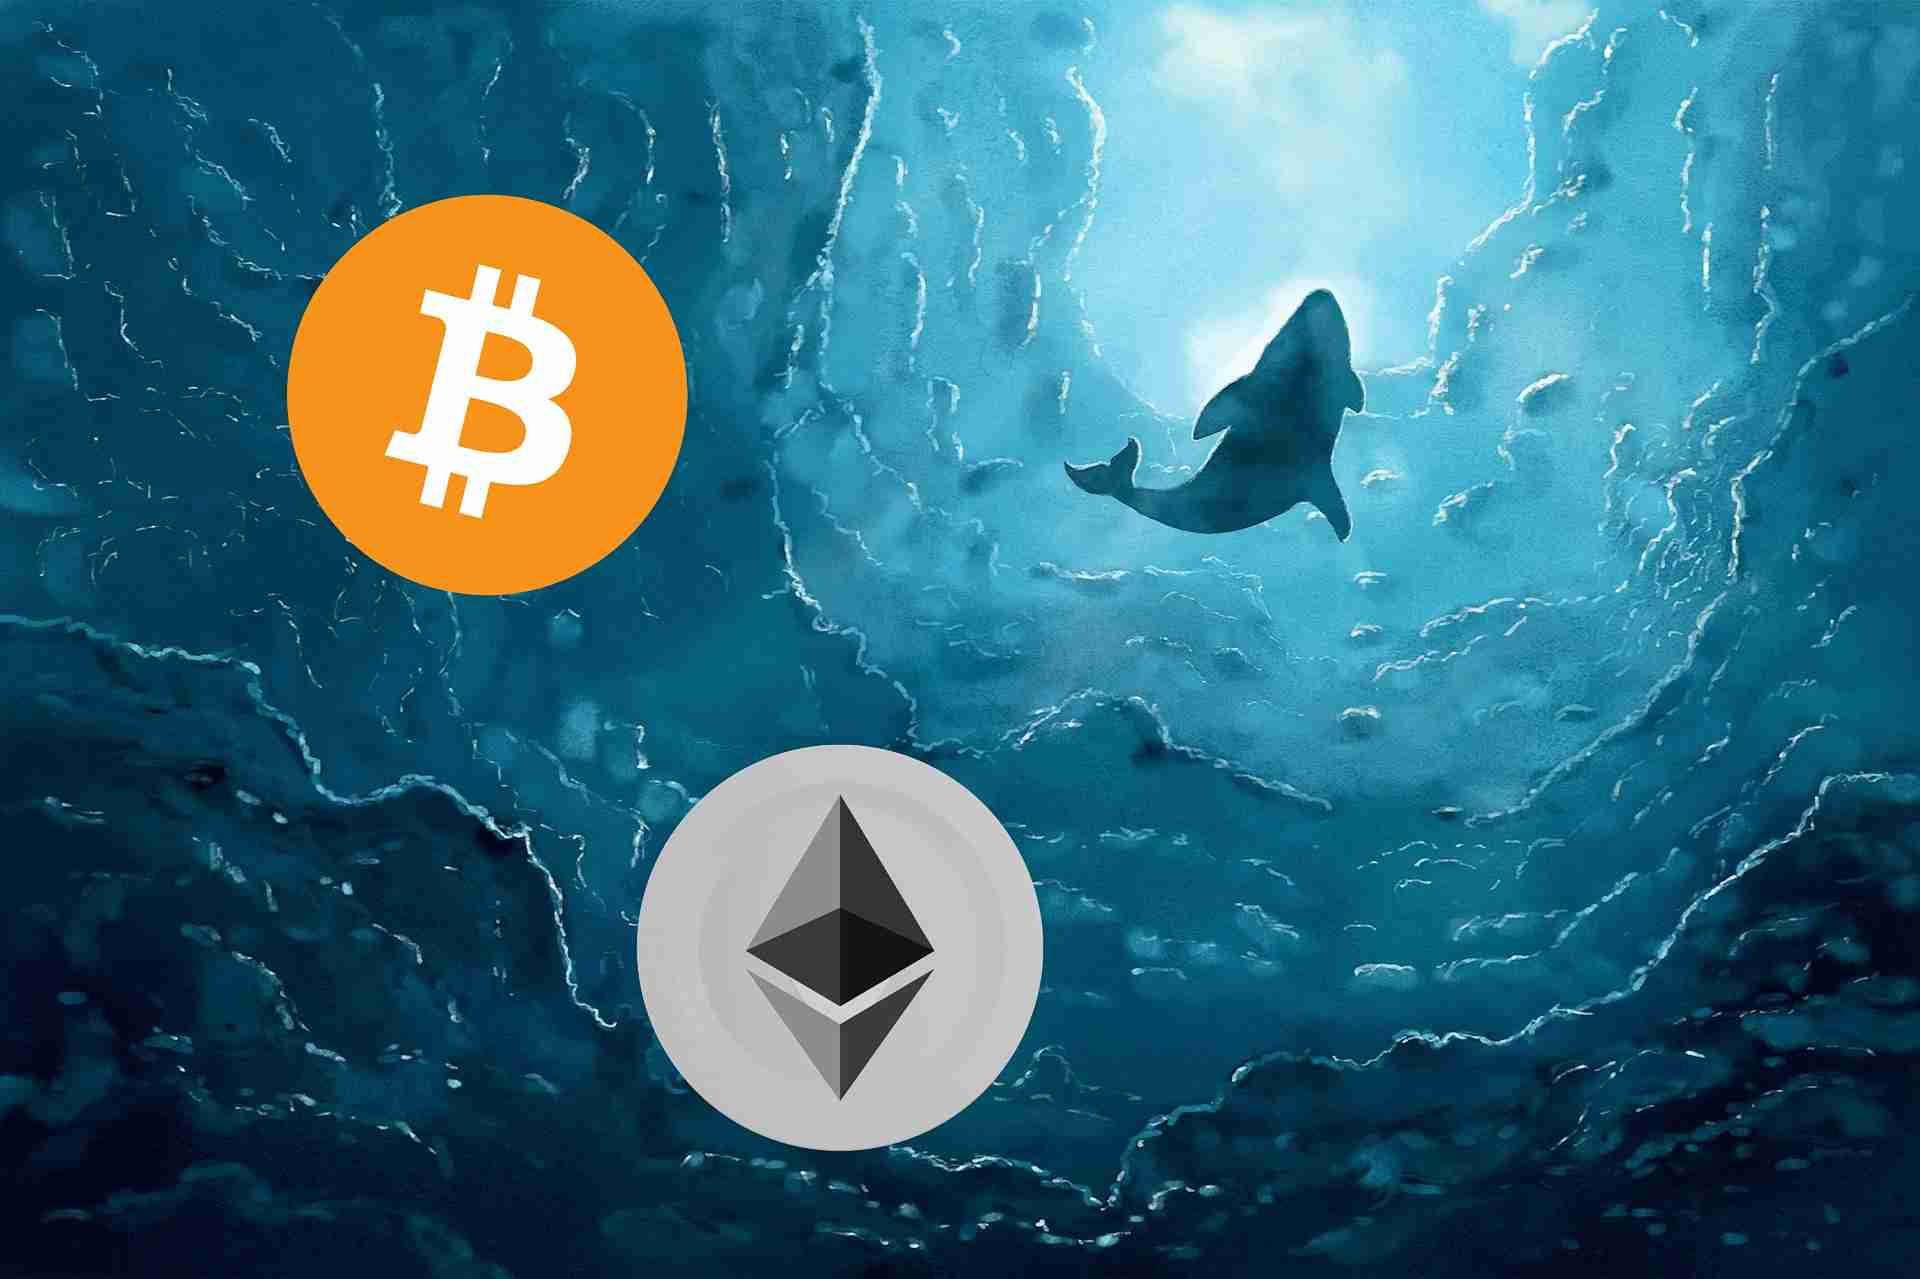 Wieloryby w oceanie, w tle logo Bitcoin i Ethereum.